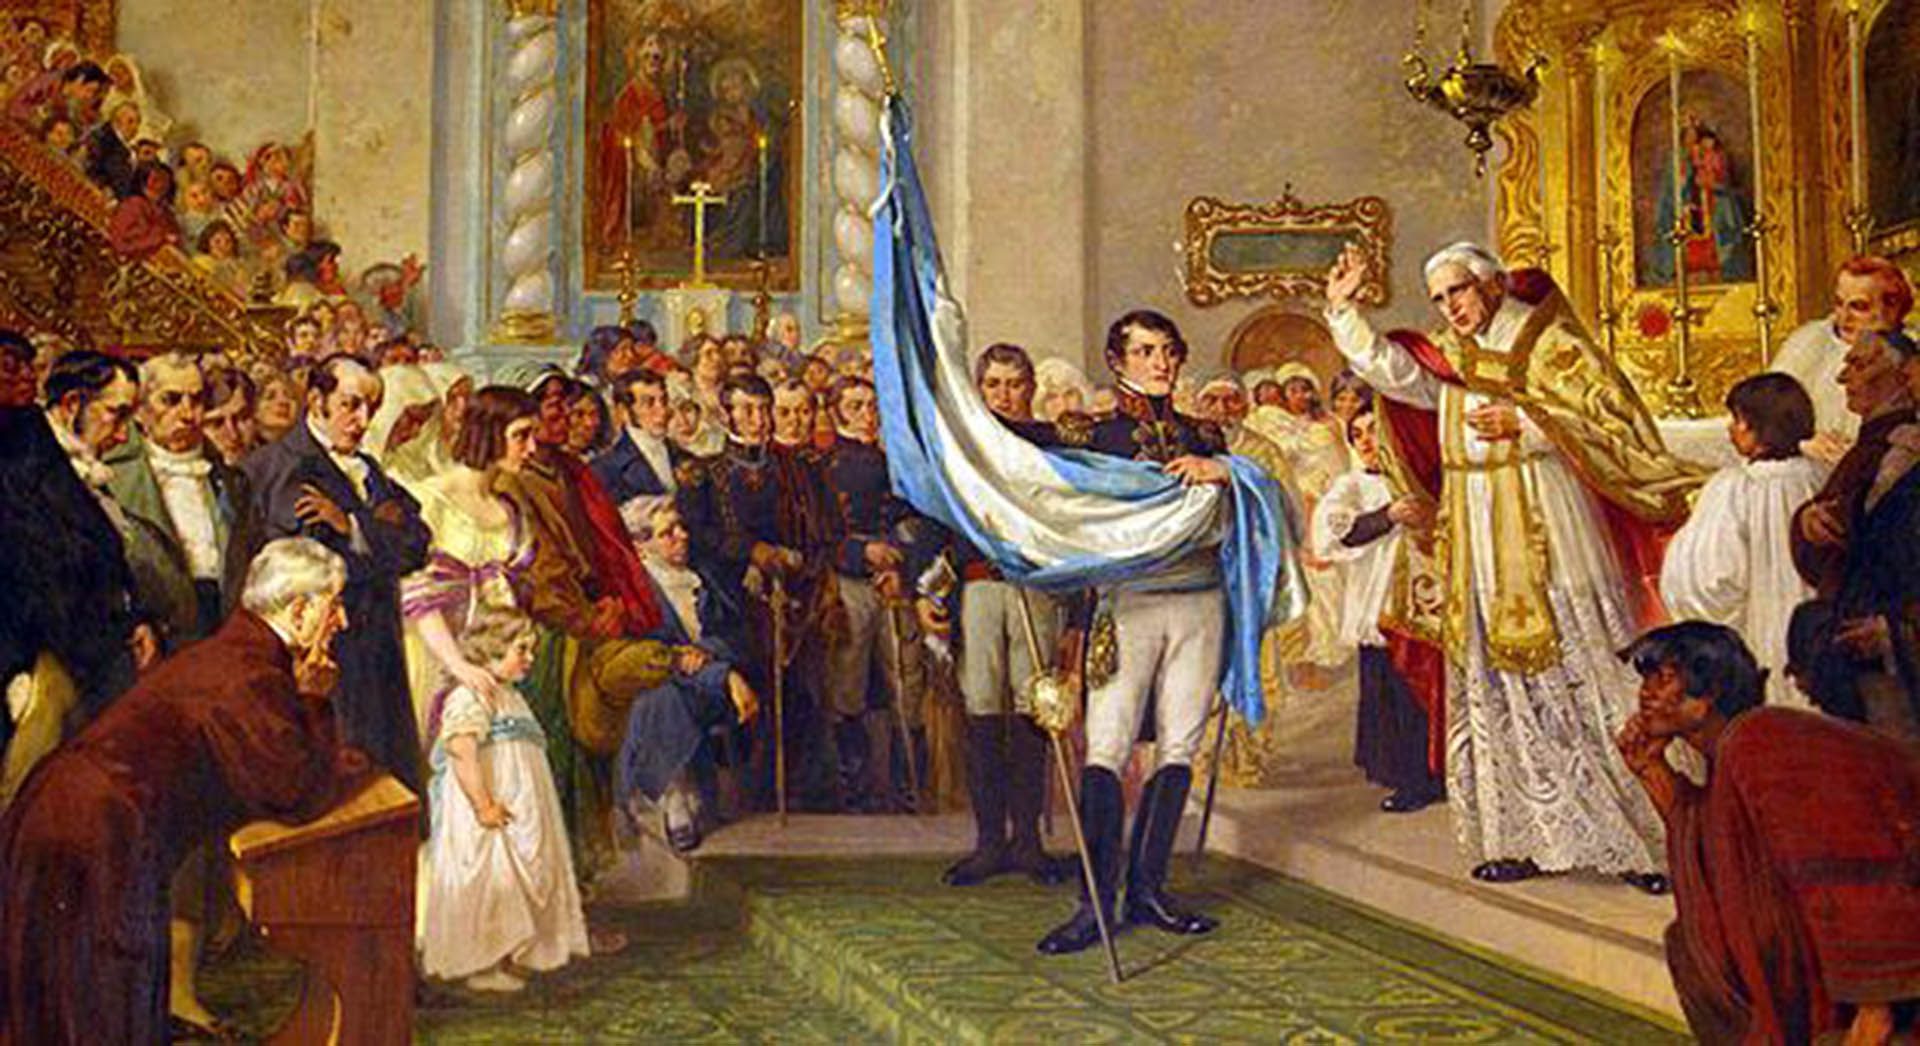 Bendición de la bandera por Juan Ignacio Gorriti en la iglesia matriz de San Salvador de Jujuy, sostenida por Manuel Belgrano. Óleo de Luis de Servi